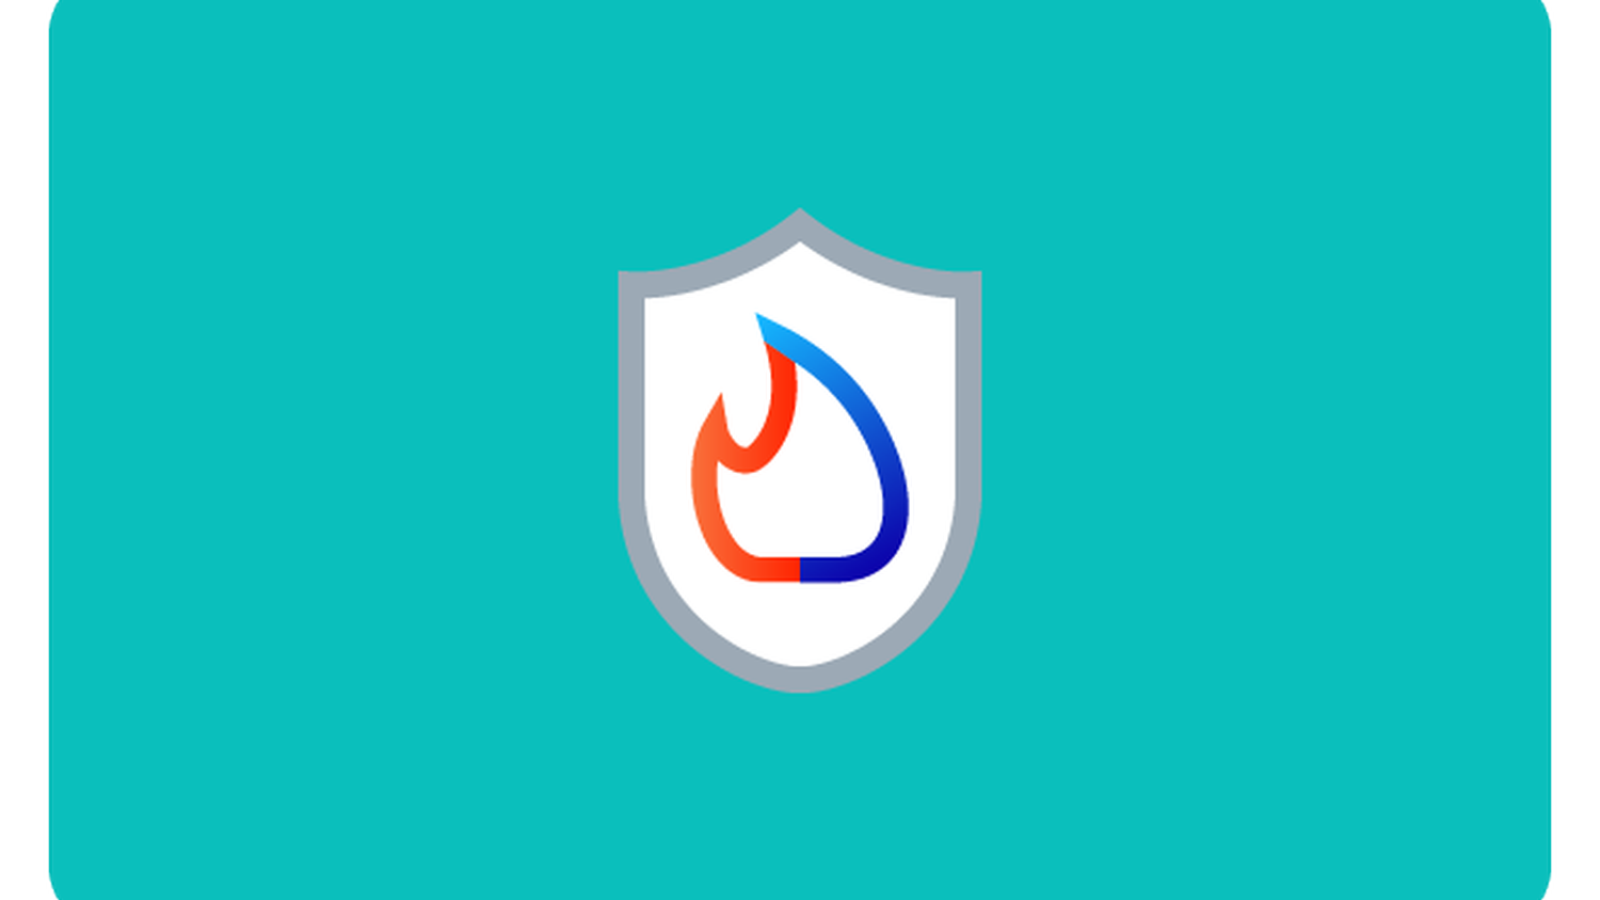 Logo mit bunter Flamme auf türkisfarbigem Hintergrund